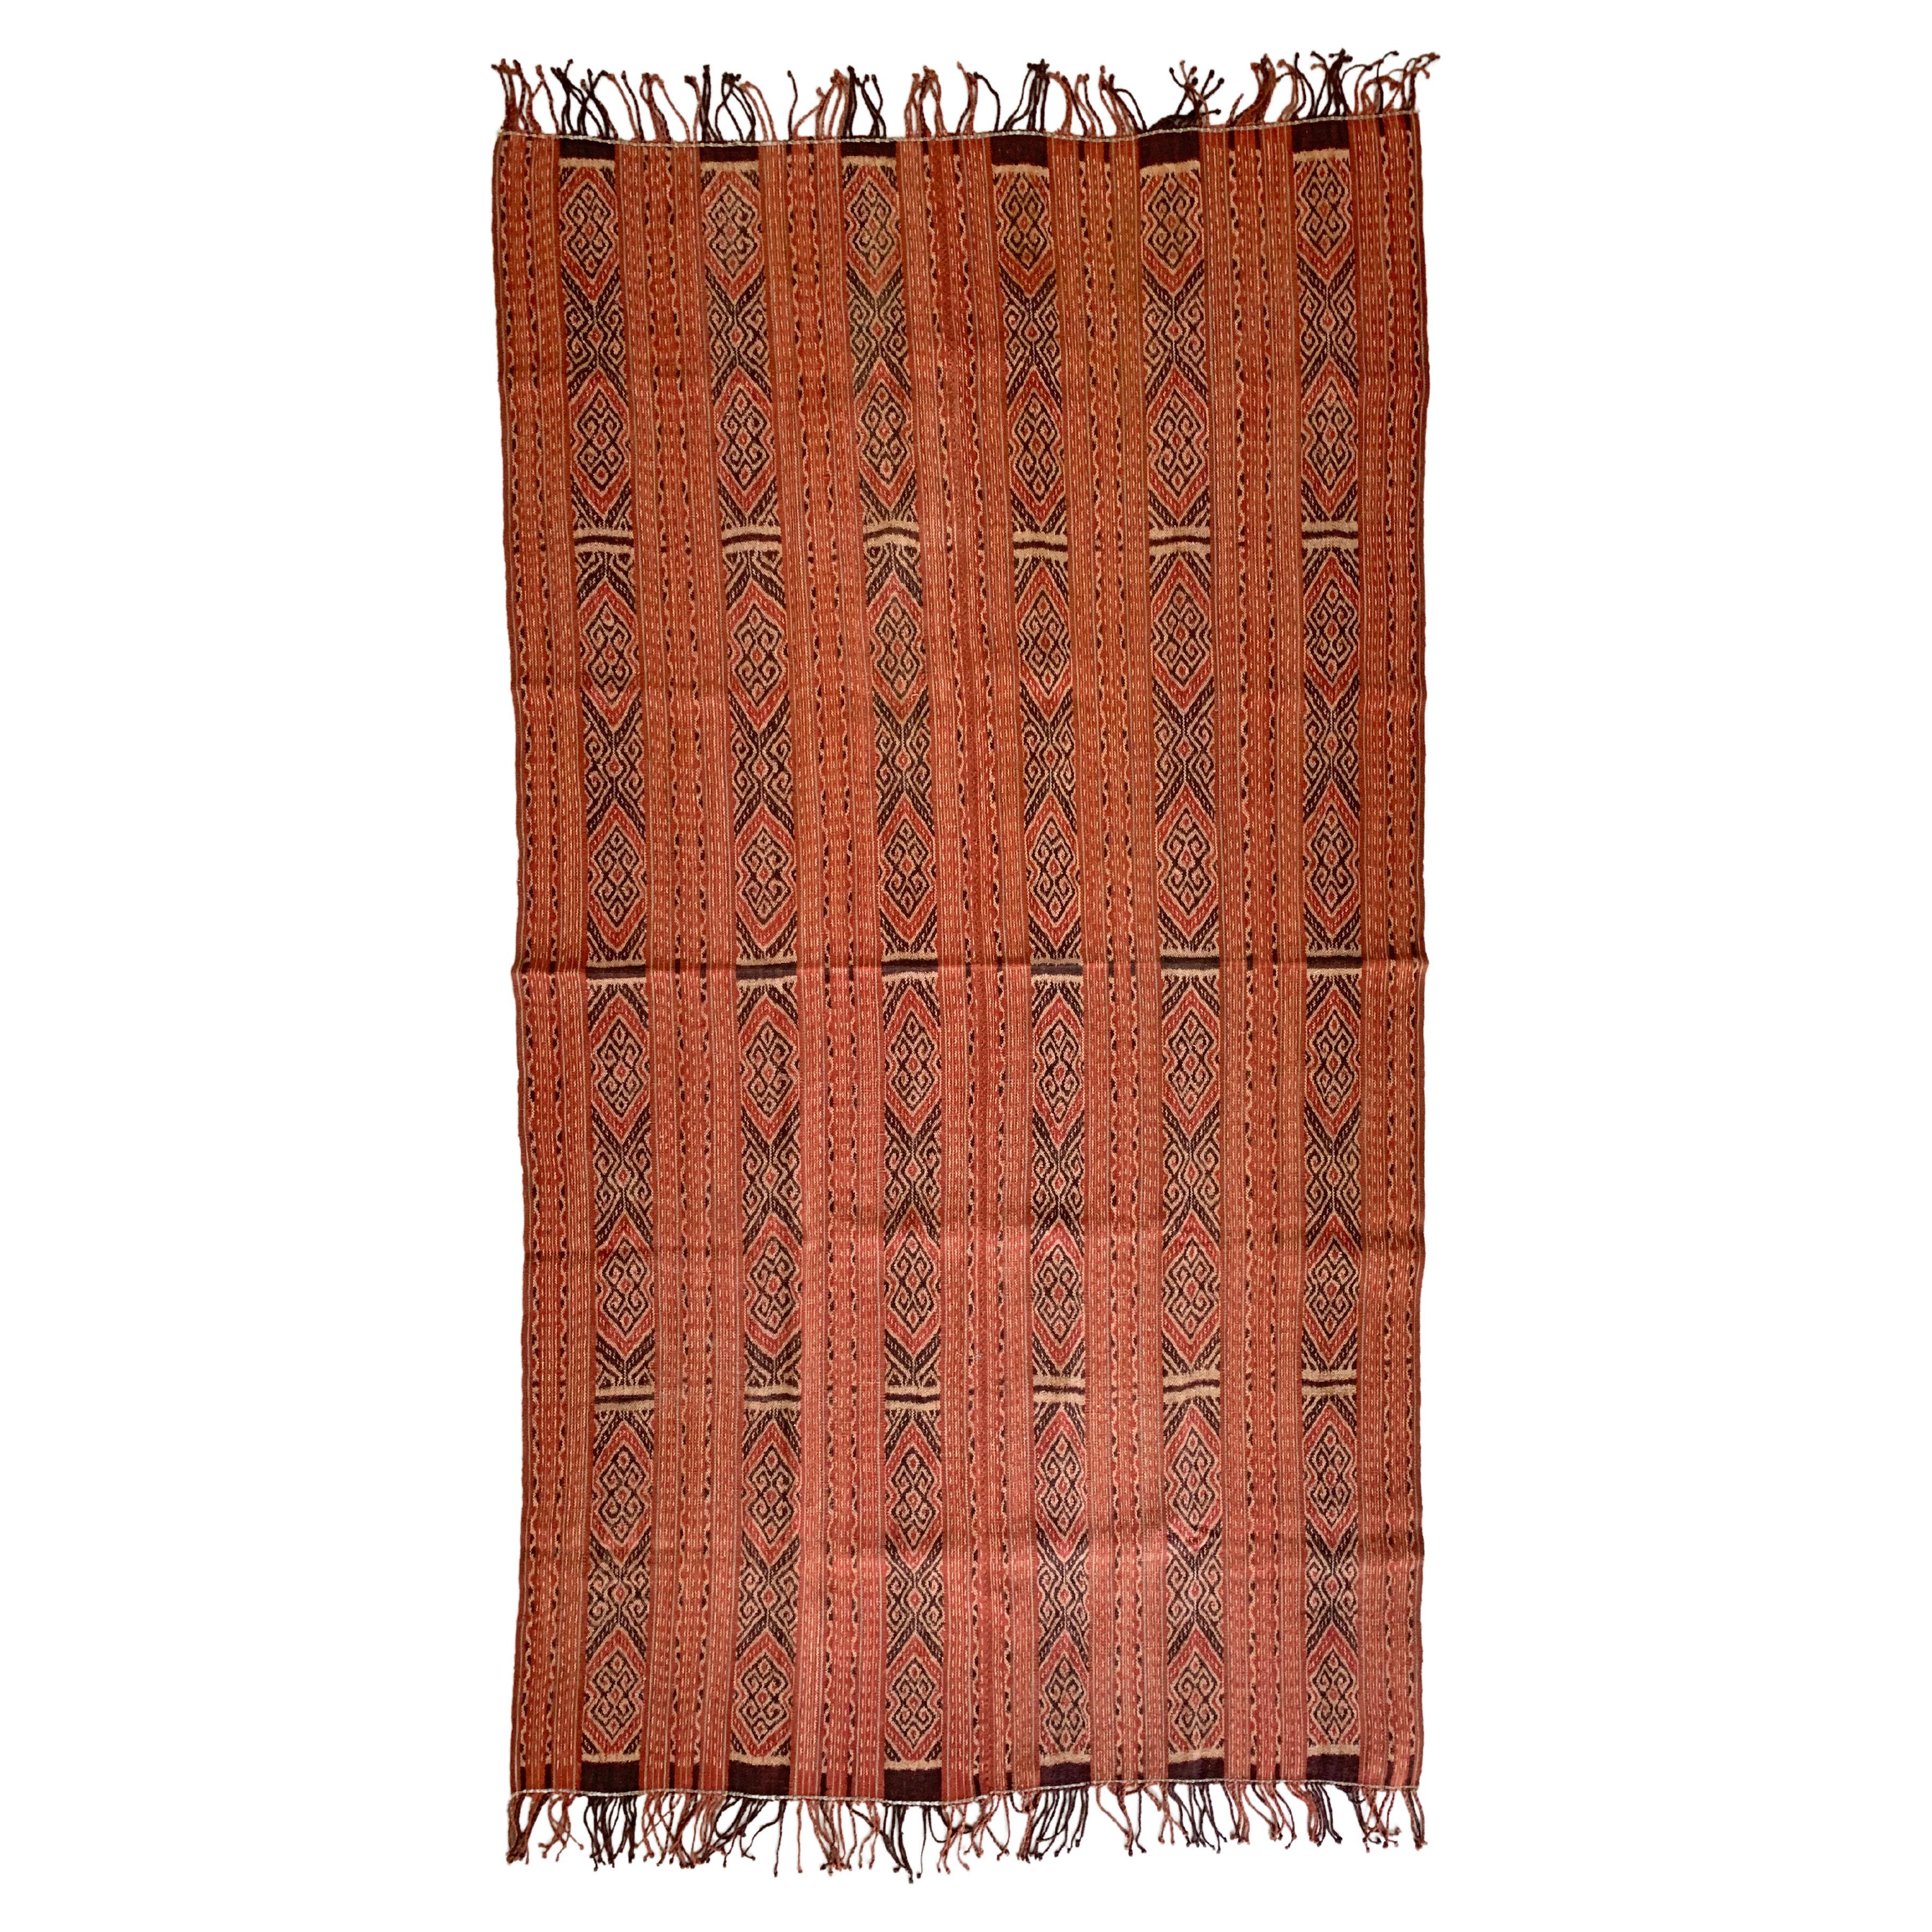 Textile Ikat de l'île de Timor, Indonésie